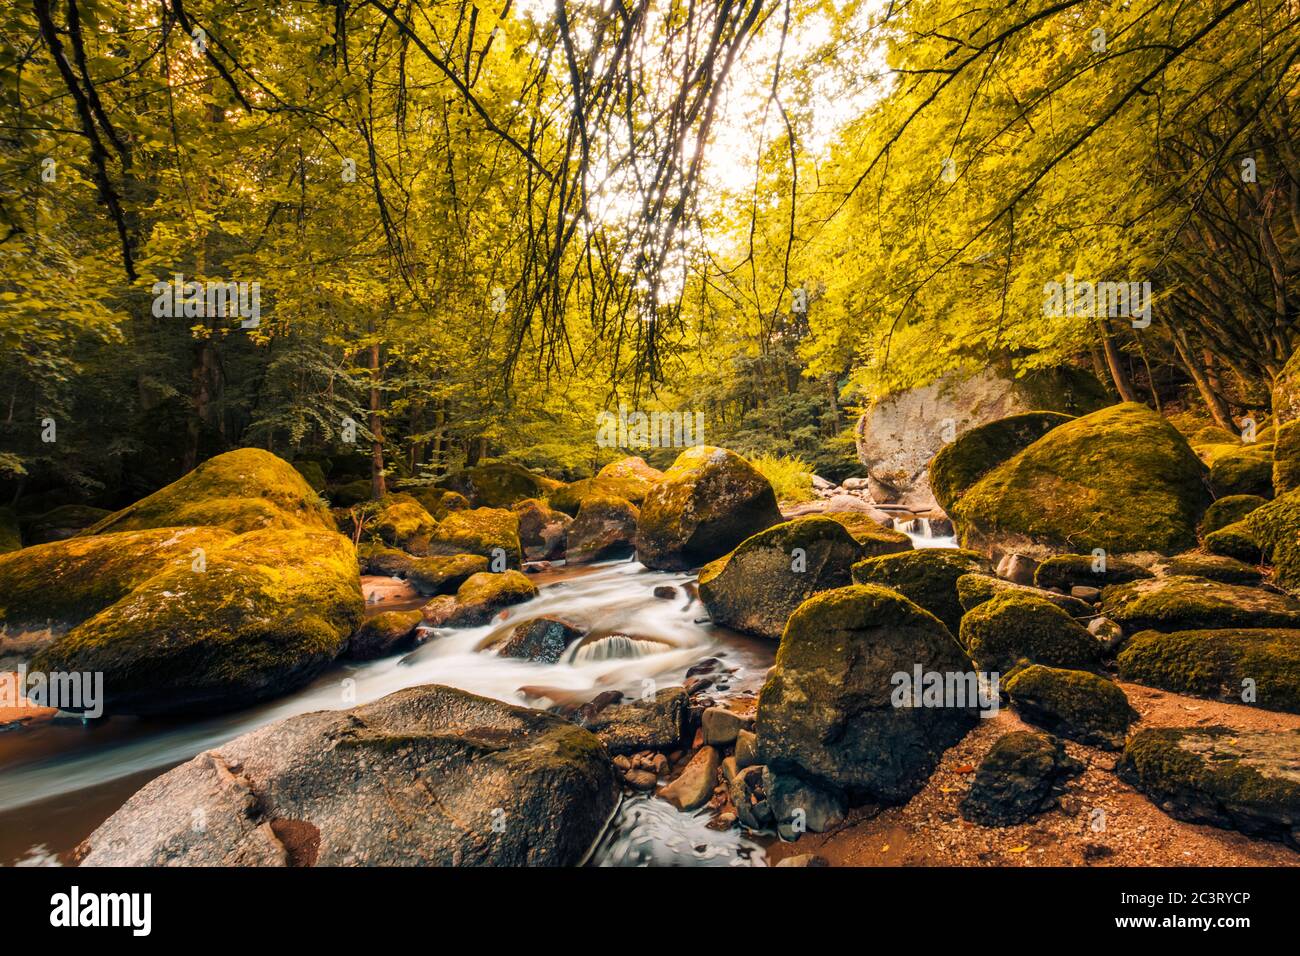 Forêt automnale, rochers couverts de mousse, feuilles mortes. Rivière de montagne avec cascades à l'automne. Couleurs d'automne, paysage naturel tranquille Banque D'Images